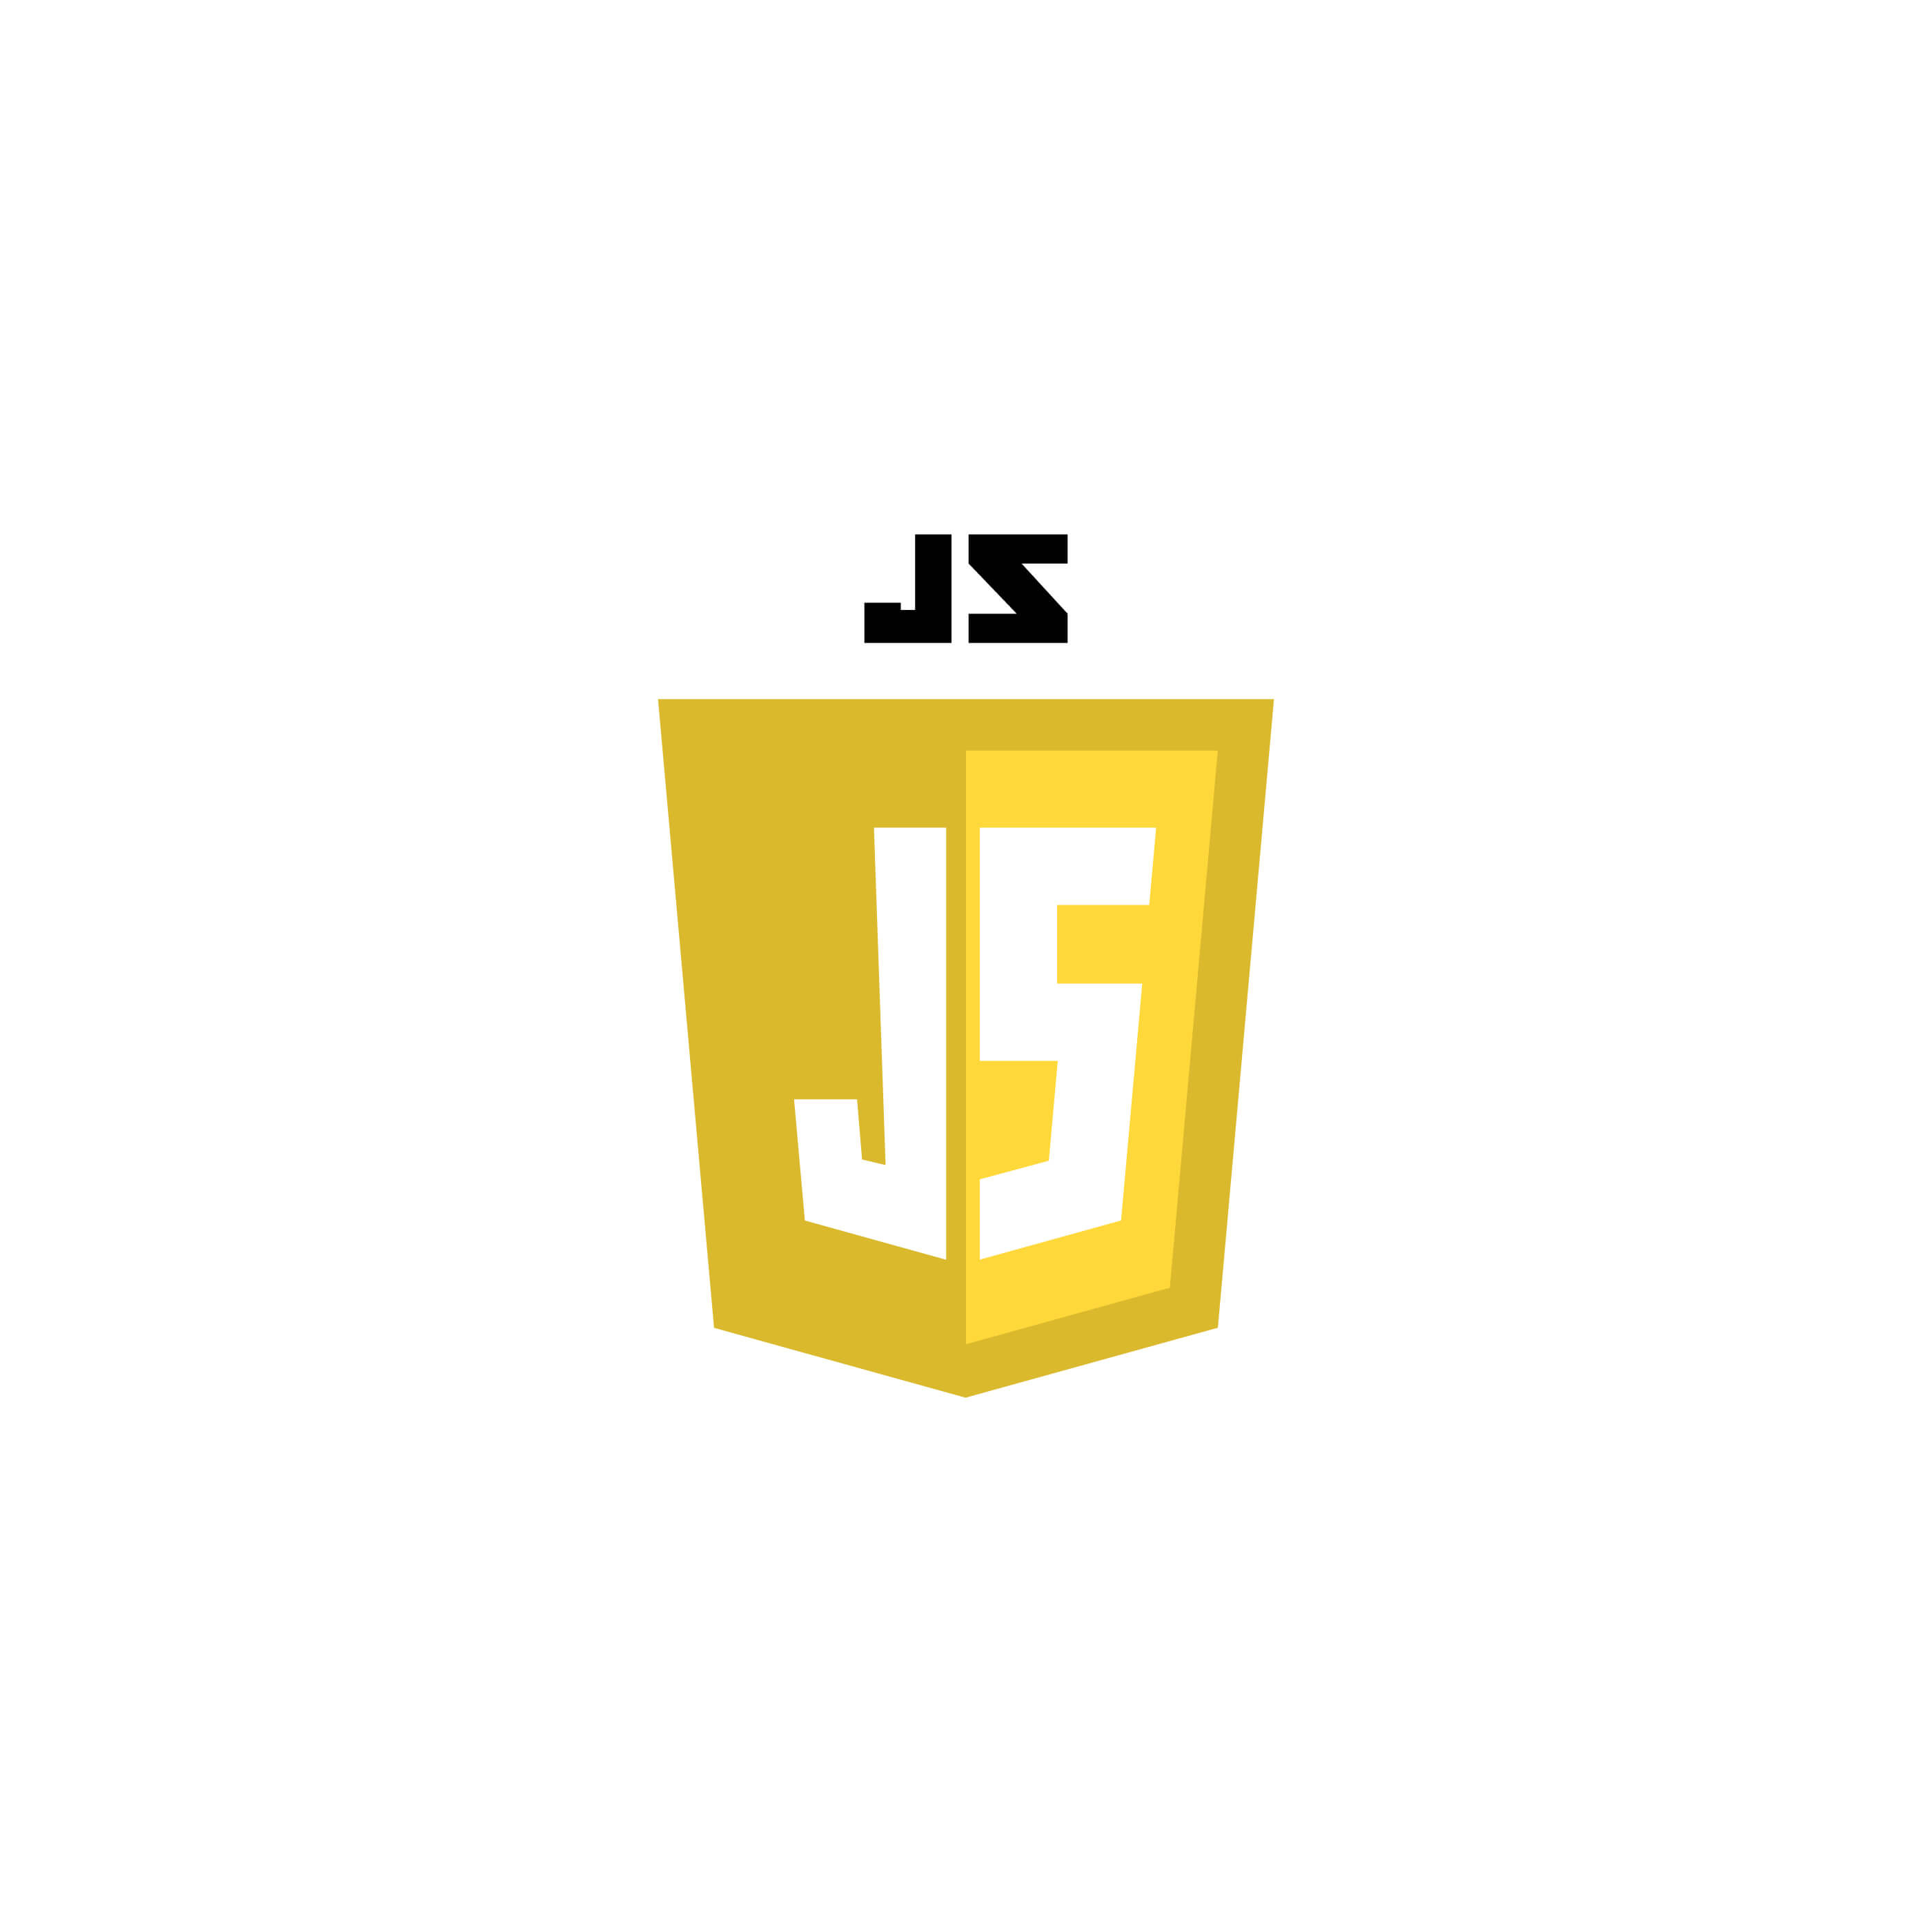 Fundamentals of JavaScript